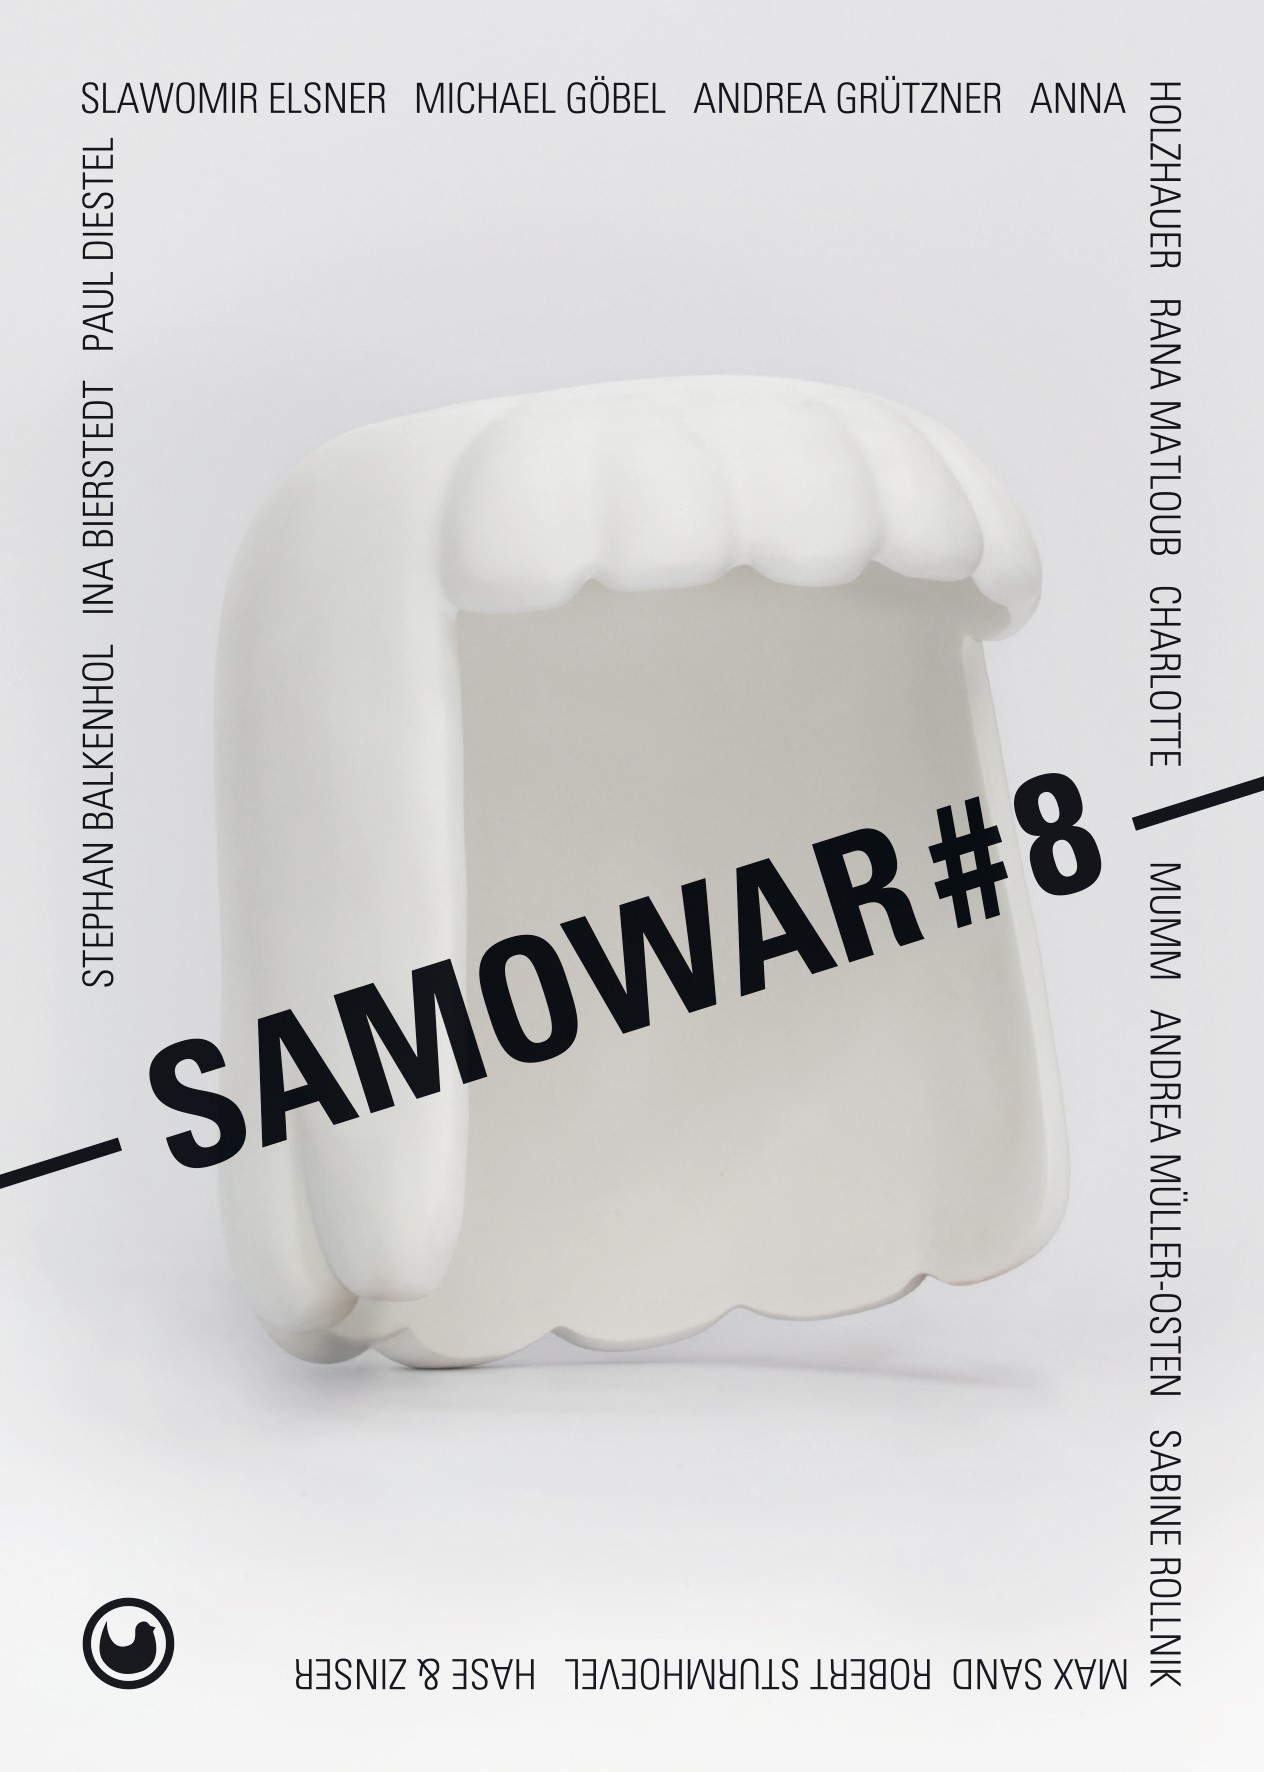 SAMOWAR#8